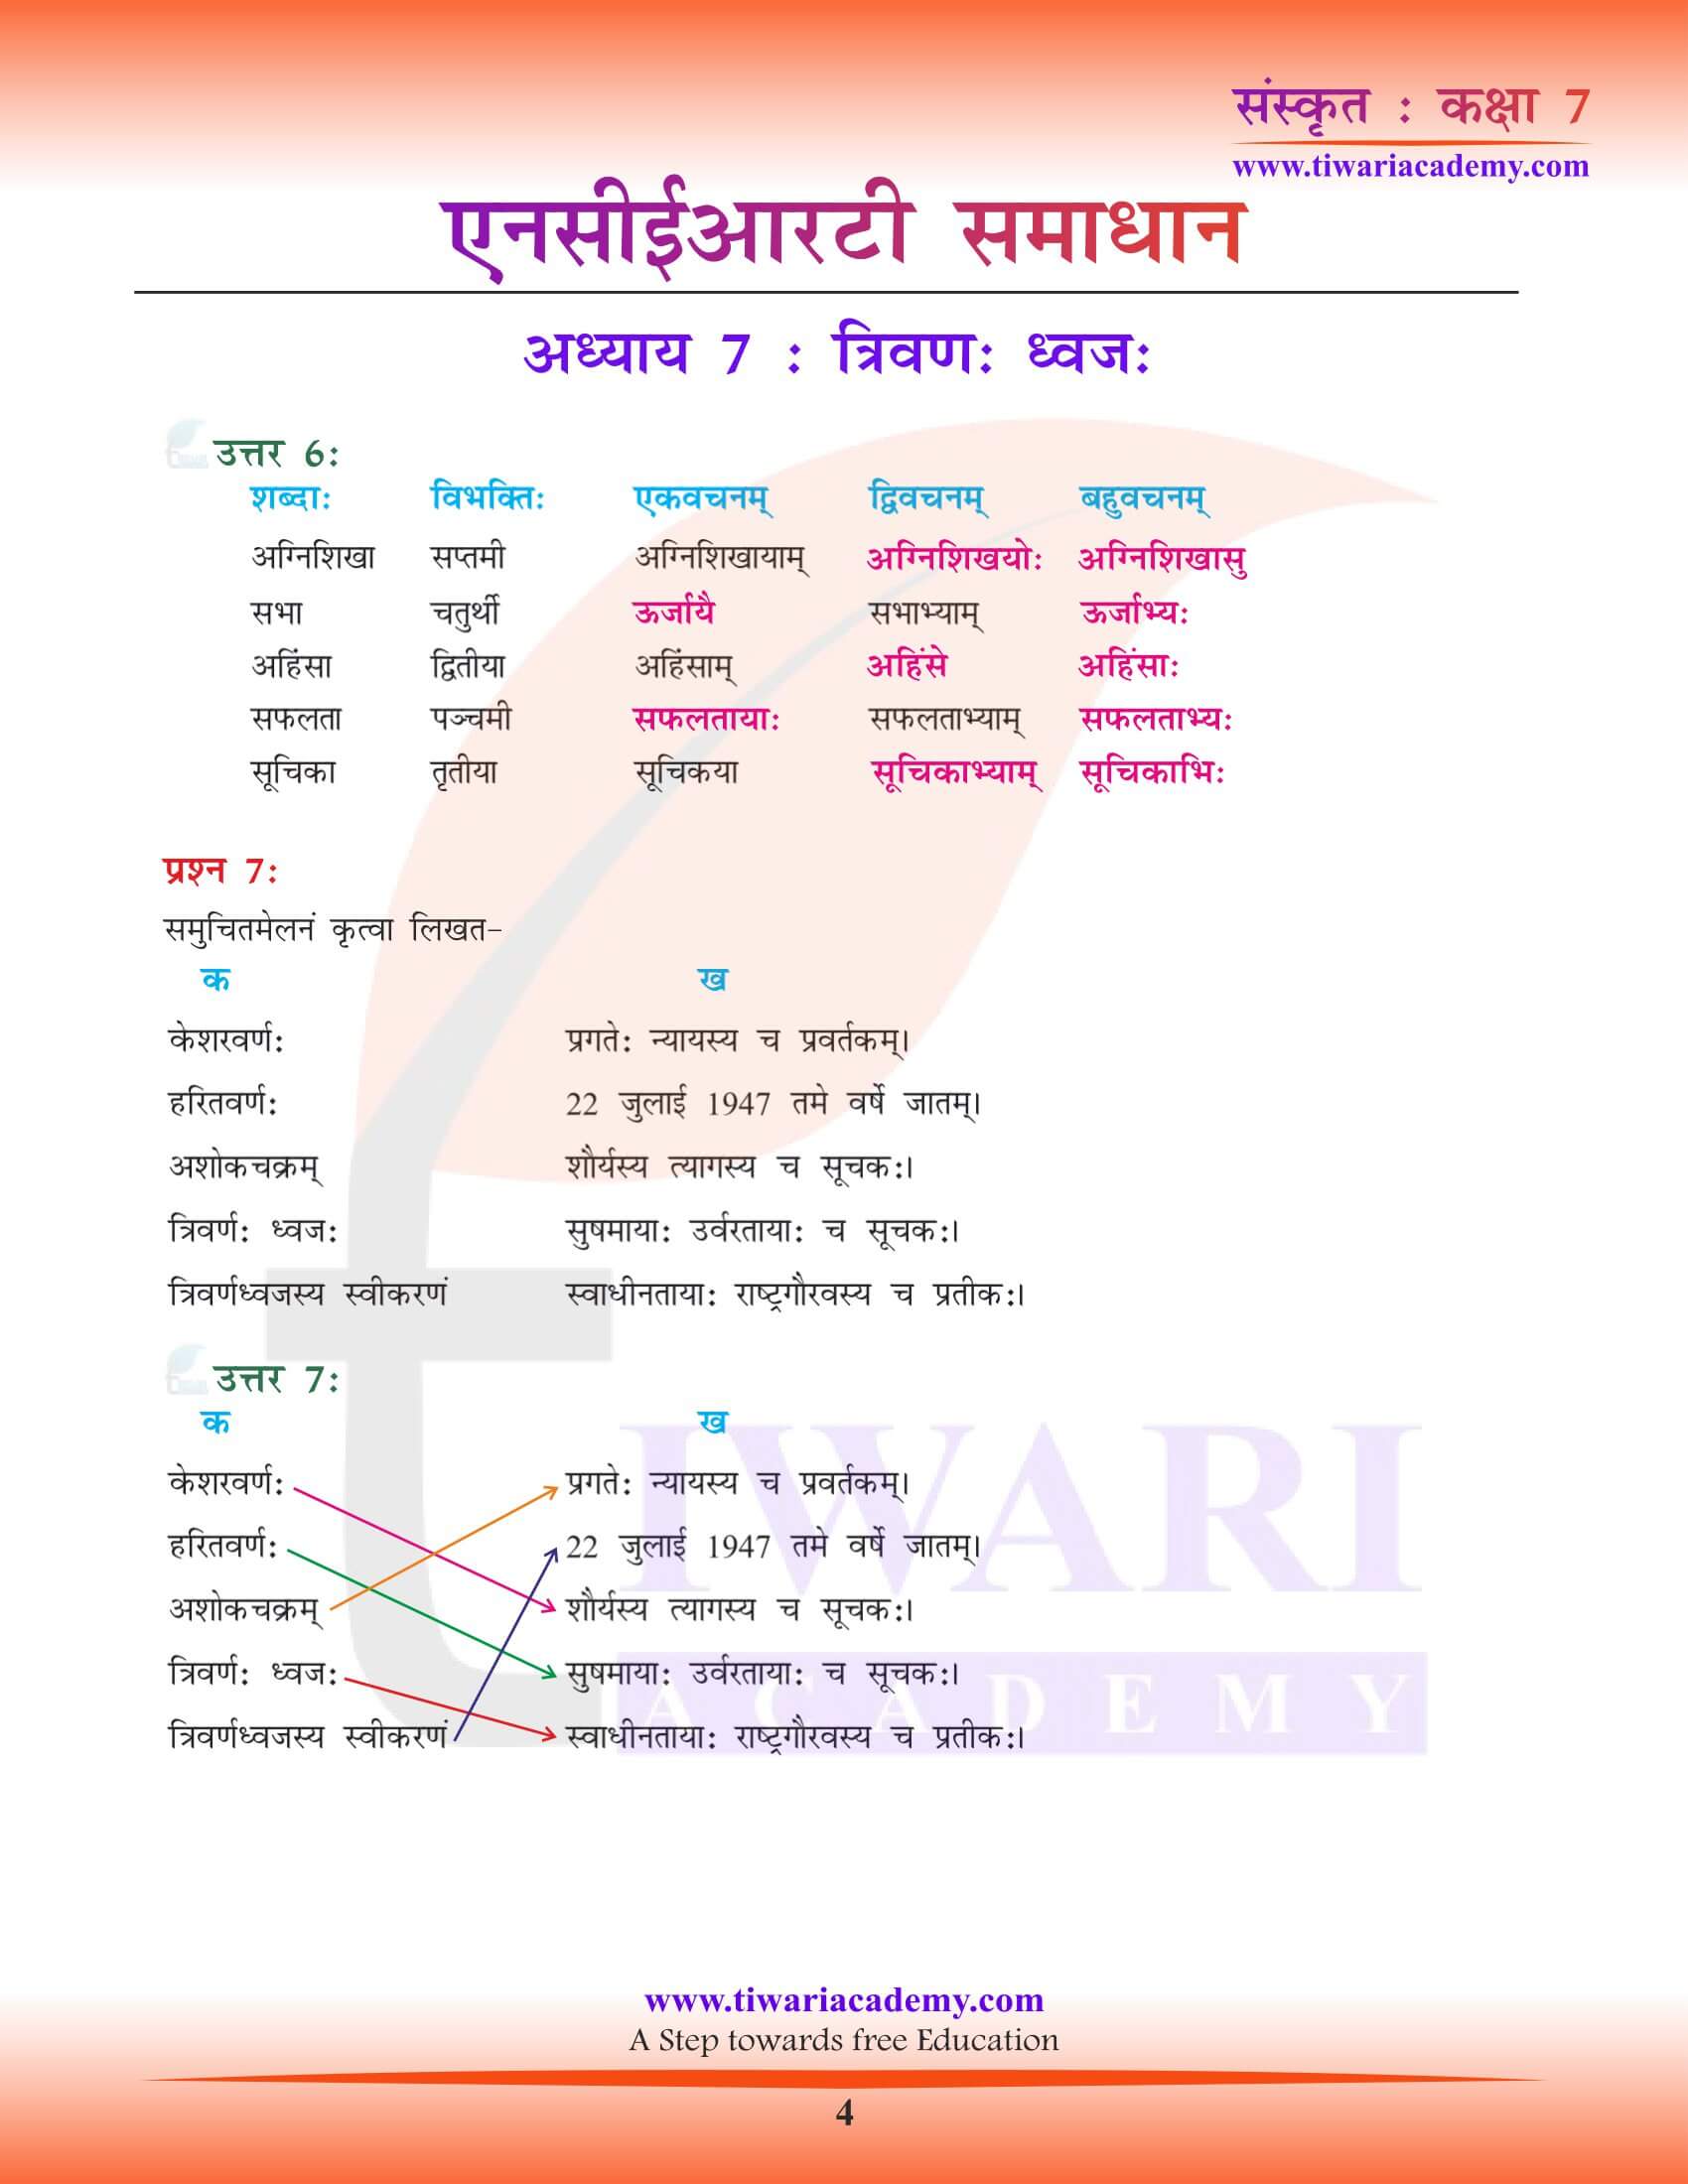 कक्षा 7 संस्कृत अध्याय 7 के हल हिंदी में